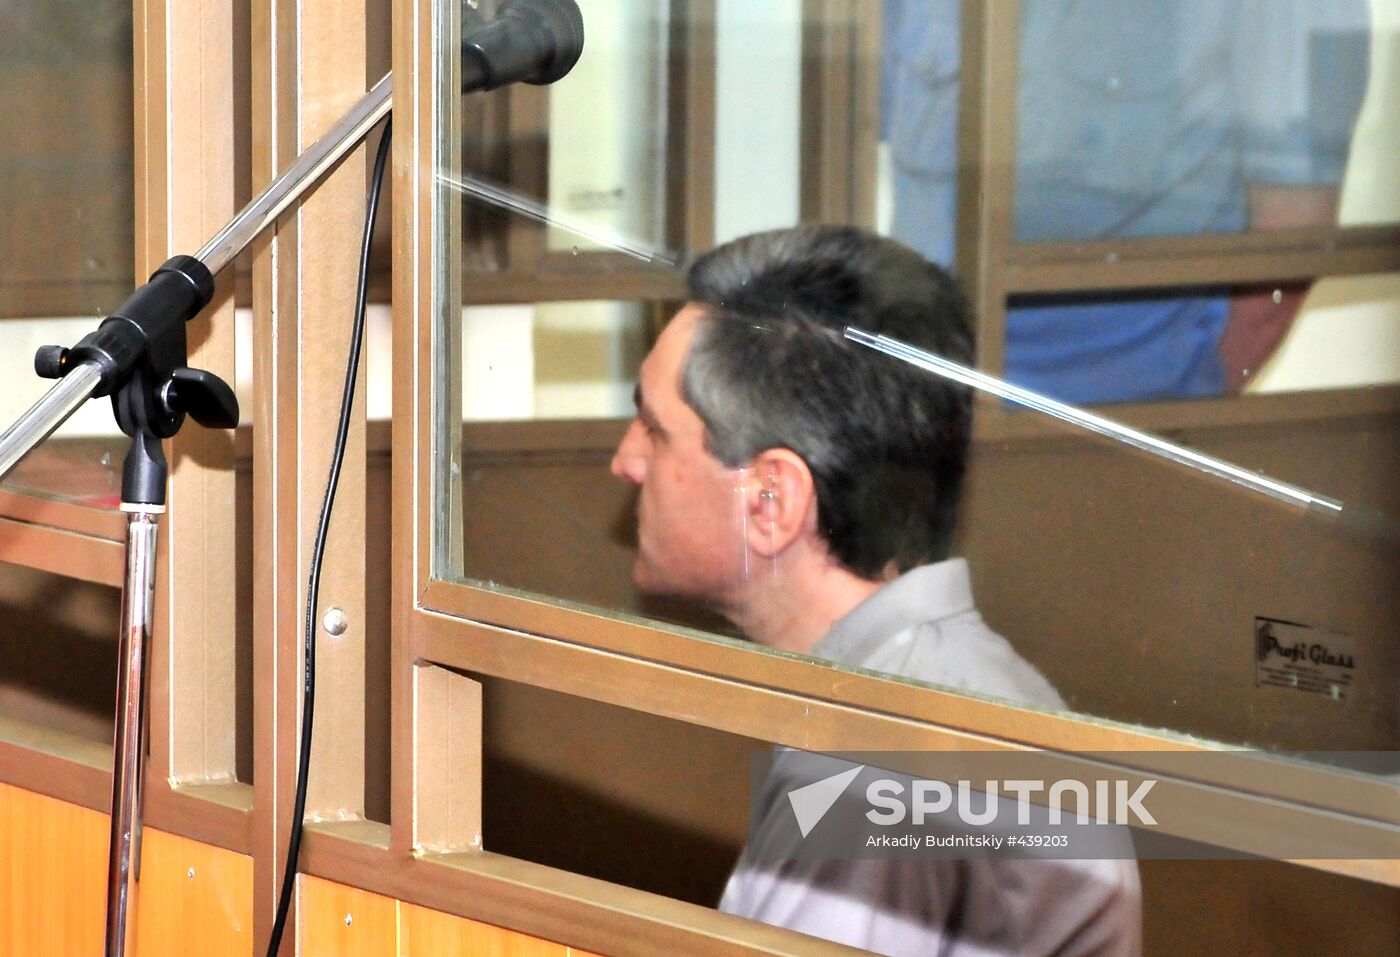 Mikhail Khachidze's trial